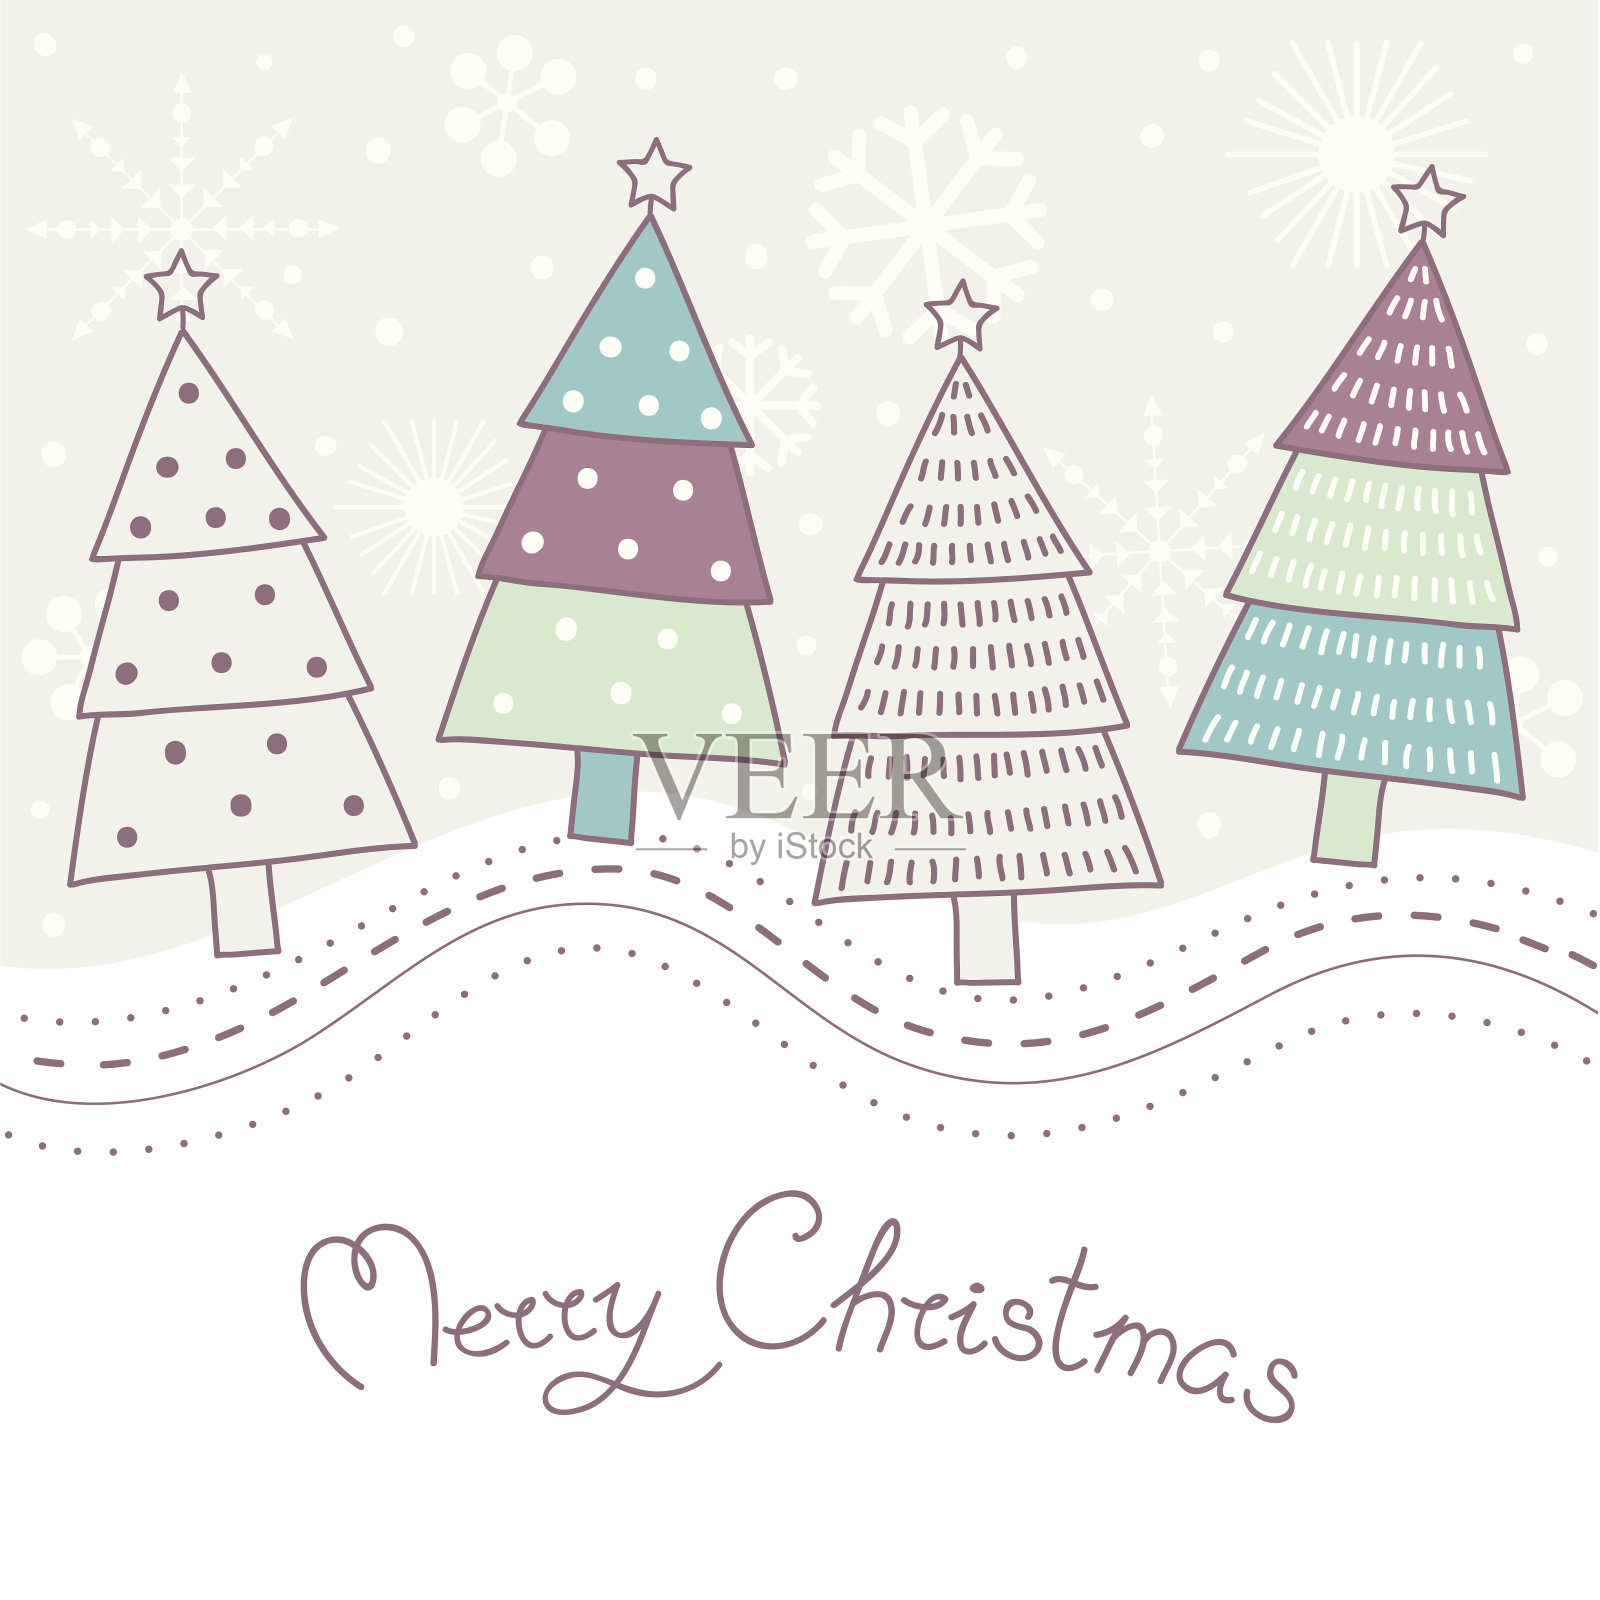 可爱的彩色冷杉树的圣诞贺卡设计模板素材